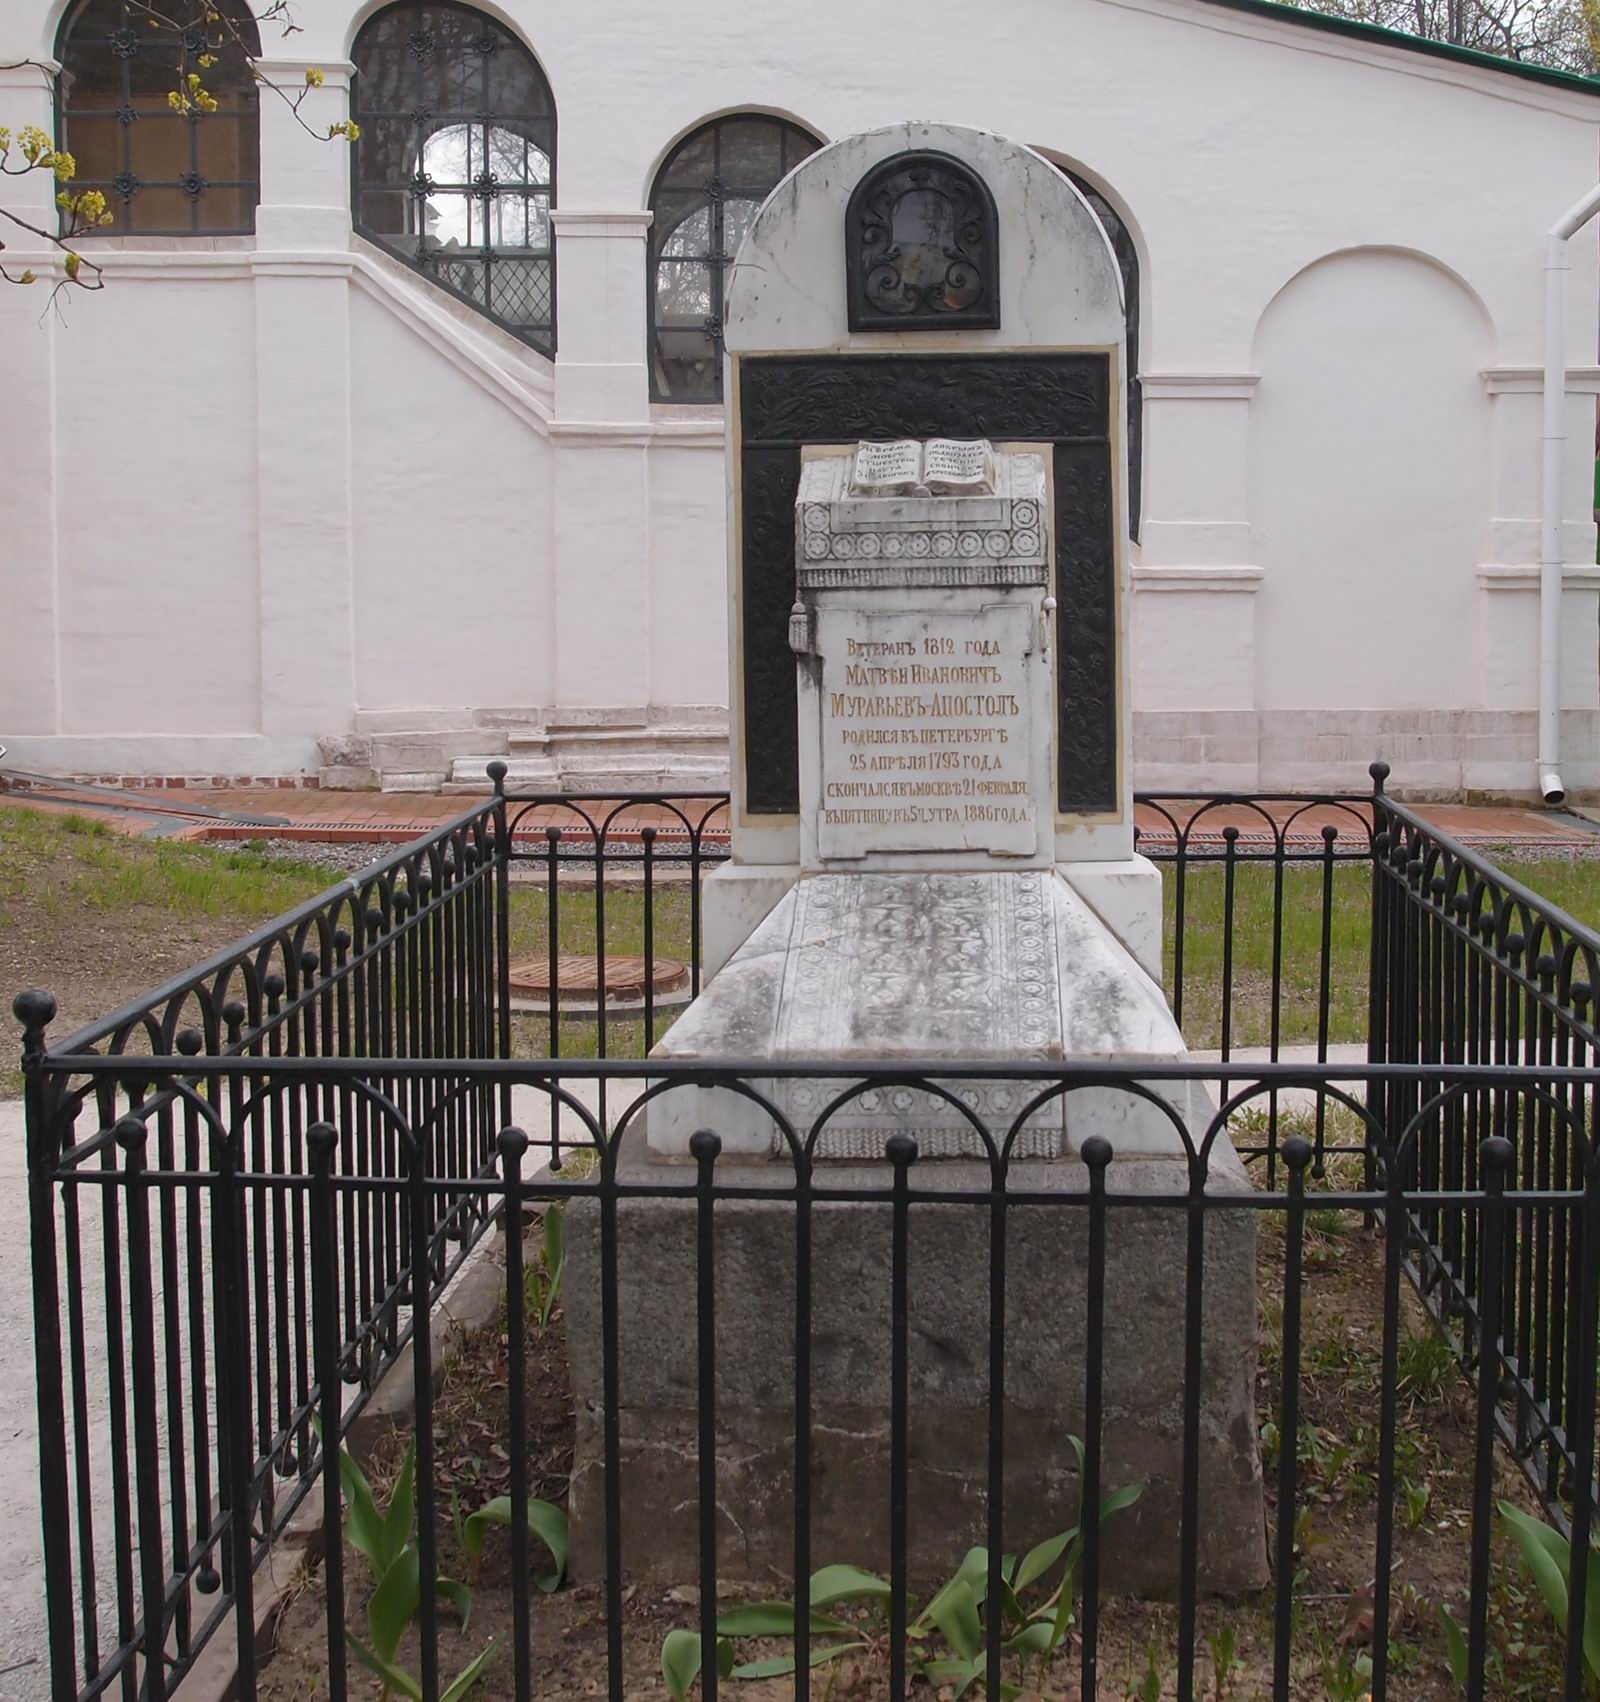 Памятник на могиле Муравьёва-Апостола М.И. (1793–1886), в Новодевичьем монастыре. Нажмите левую кнопку мыши чтобы увидеть фрагмент памятника.